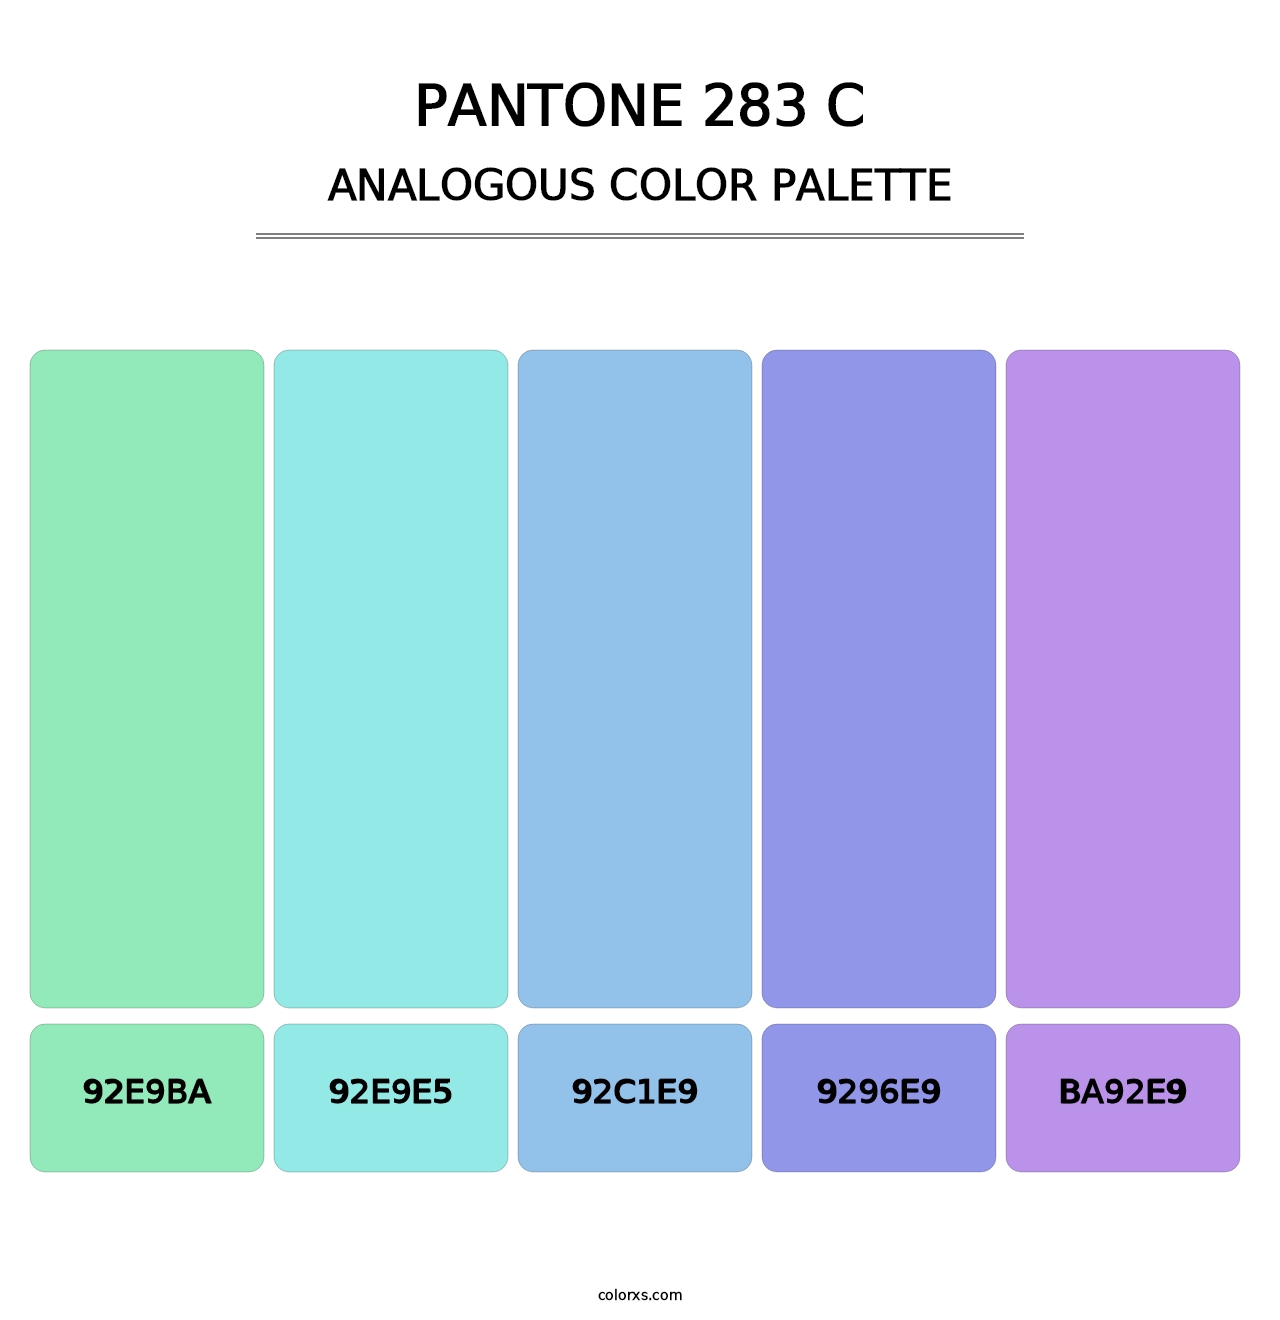 PANTONE 283 C - Analogous Color Palette